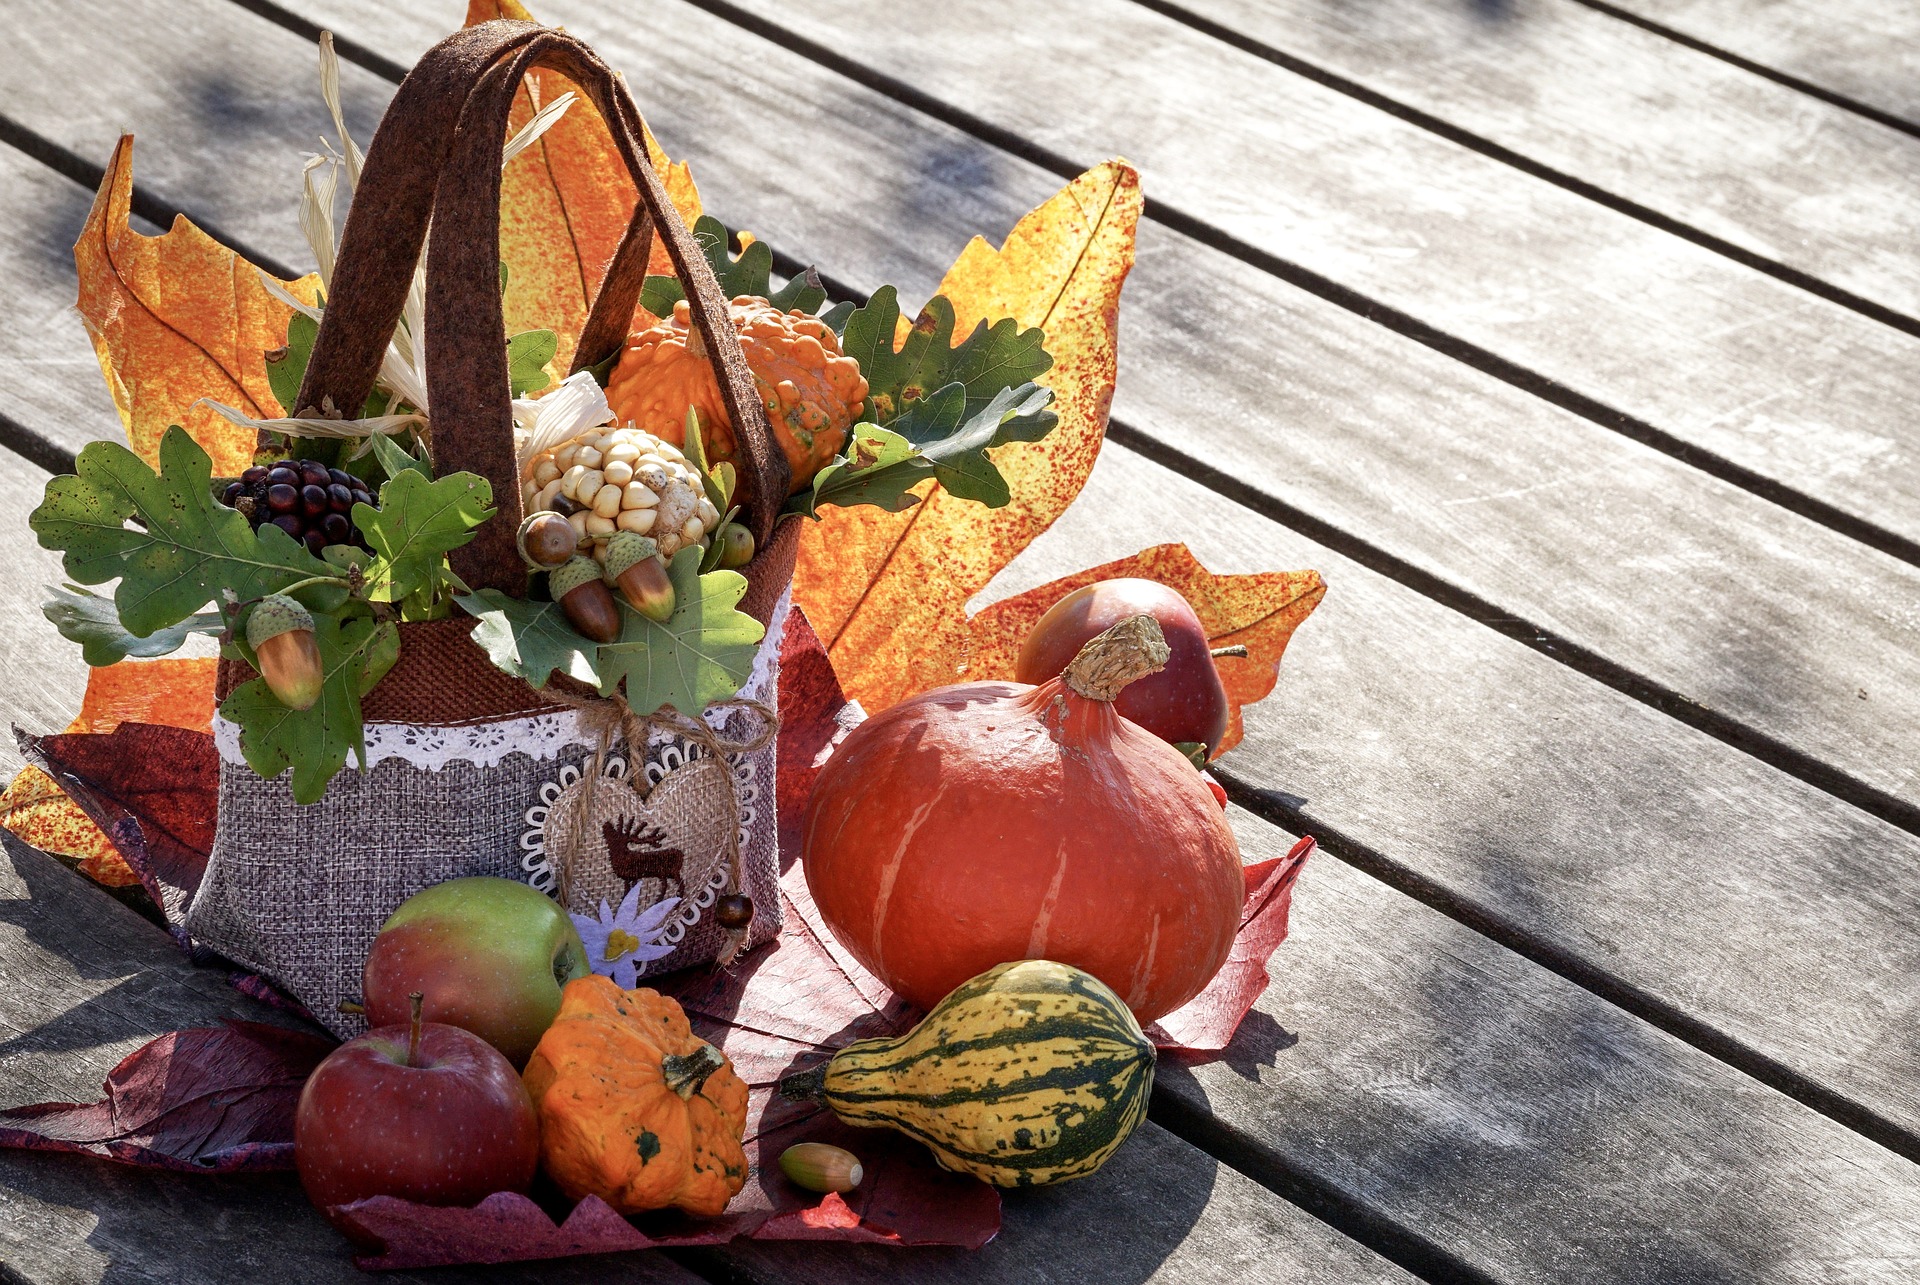 Jesienna kuchnia: Pomysły na sezonowe warzywa i owoce